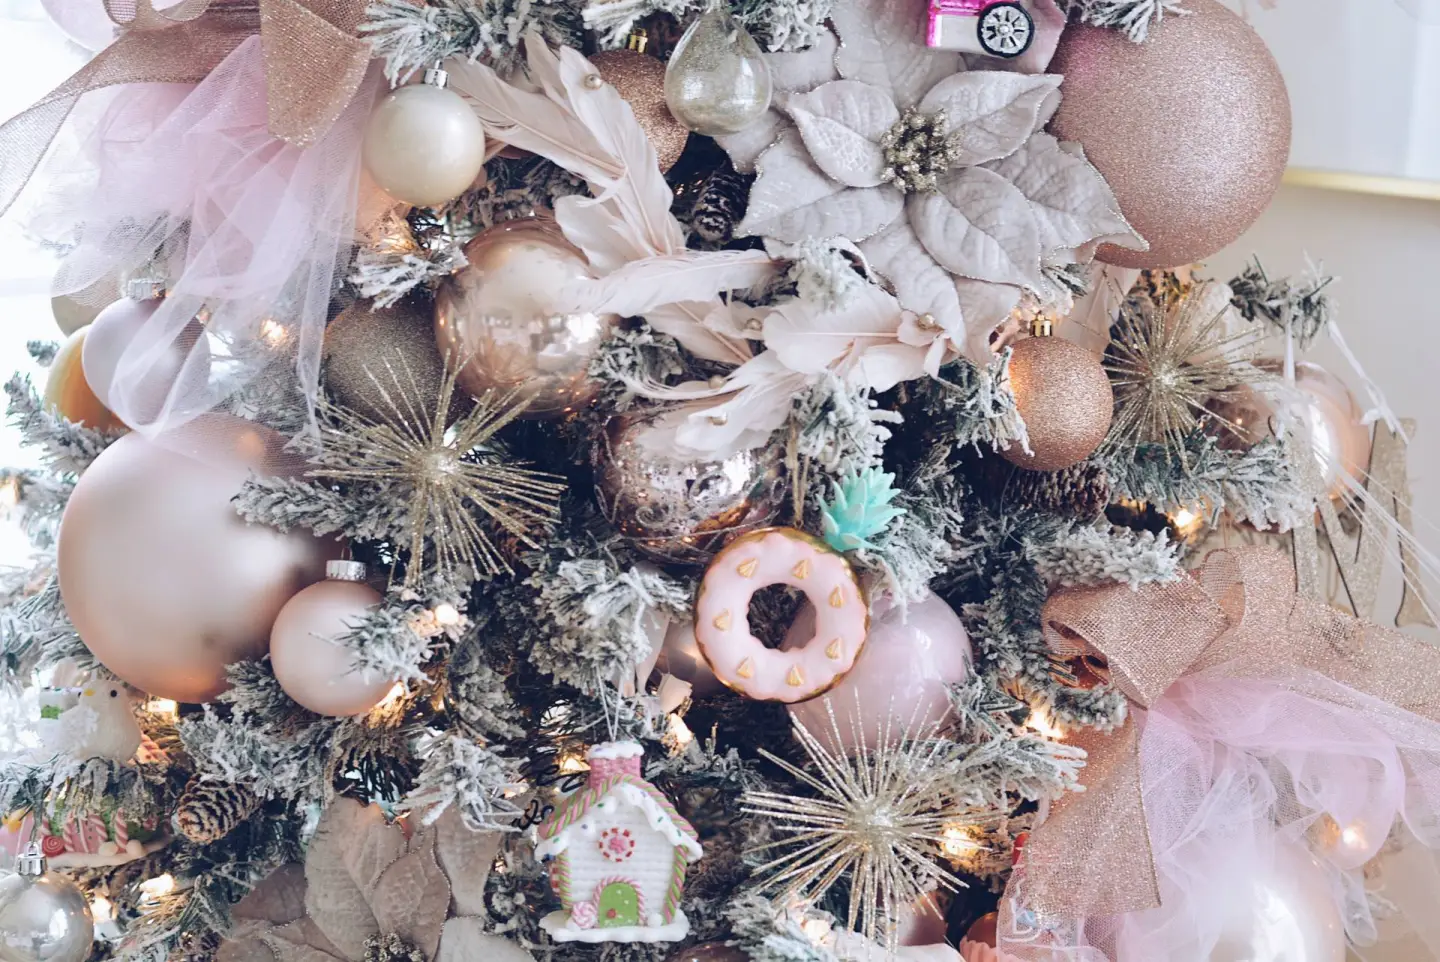 Un albero di Natale bianco e rosa - decorazioni insolite